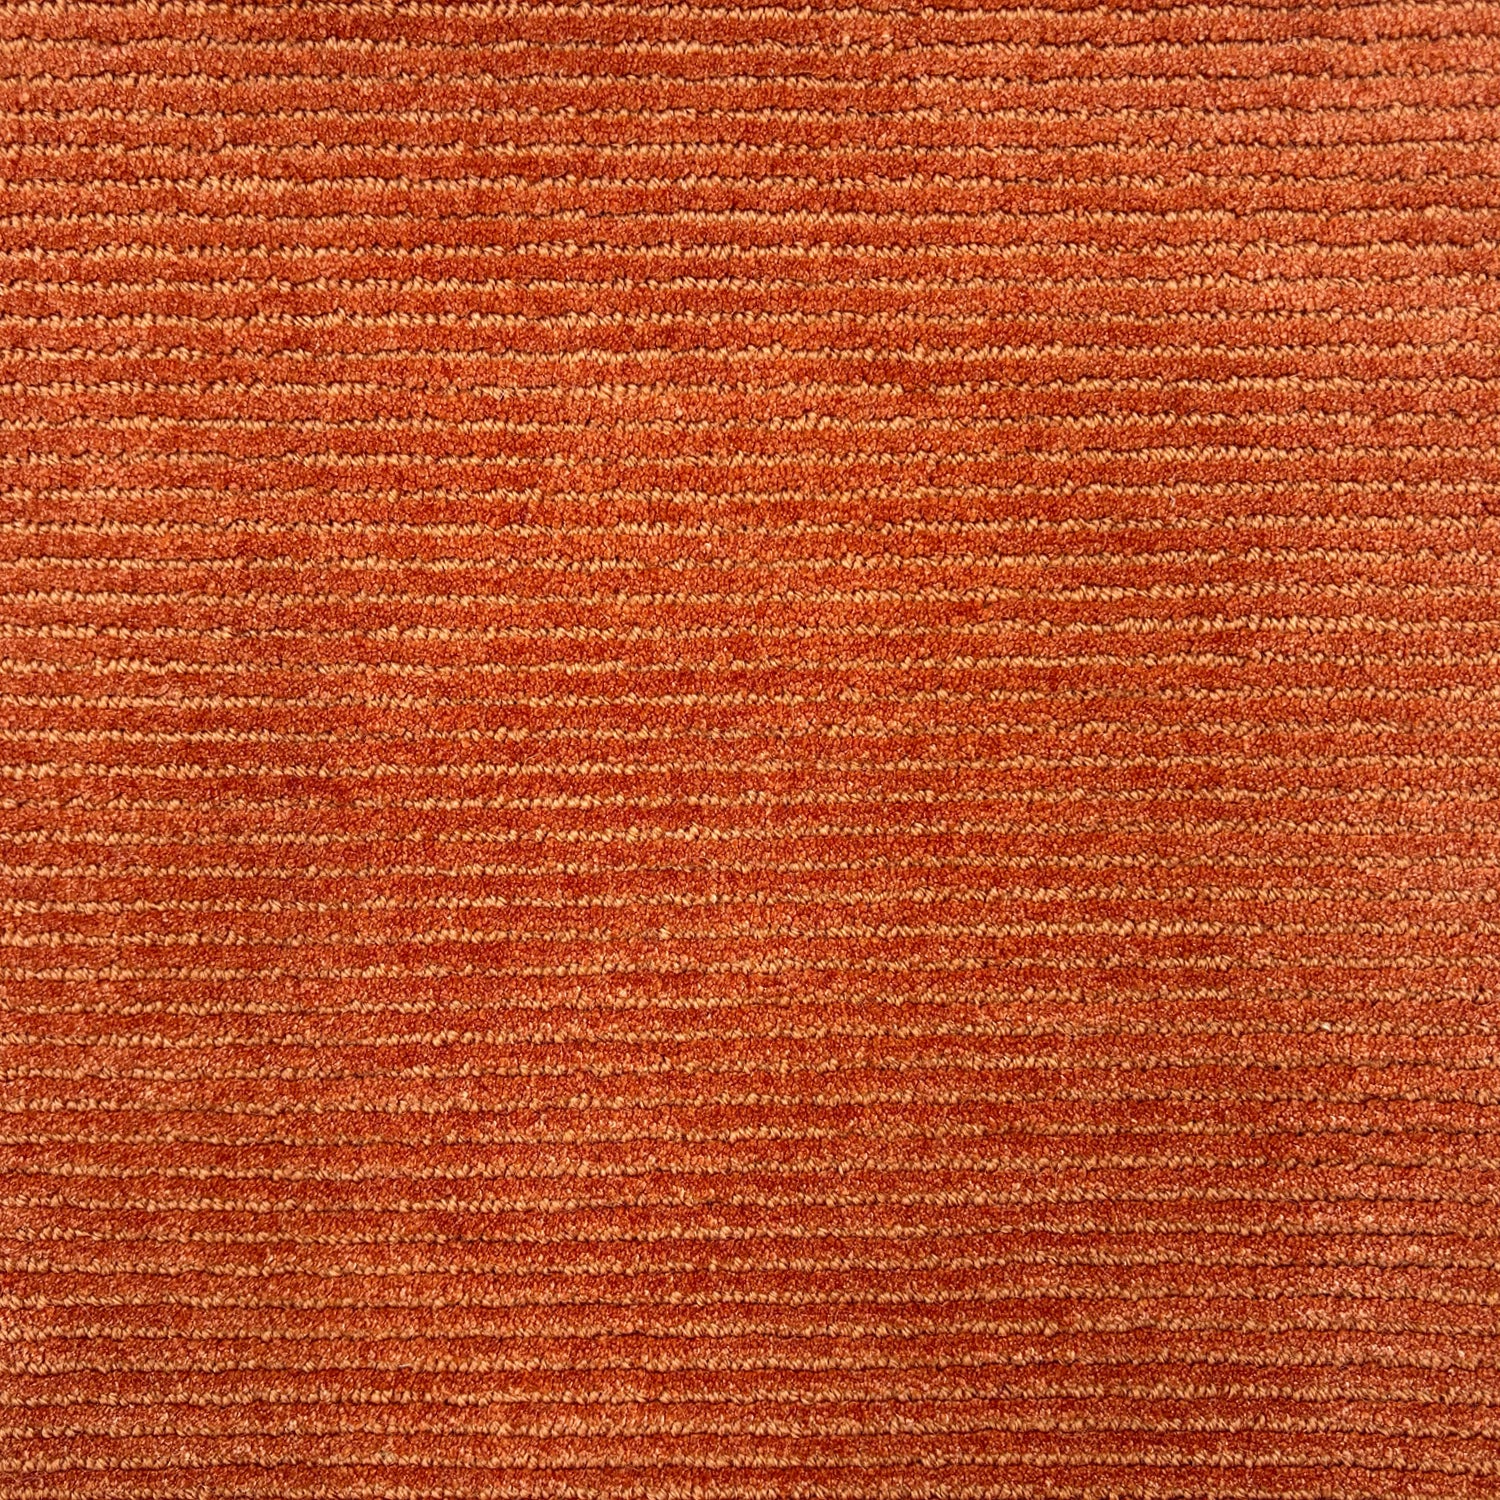 Detail of a handtufted orange rug with a subtle ribbed stripe